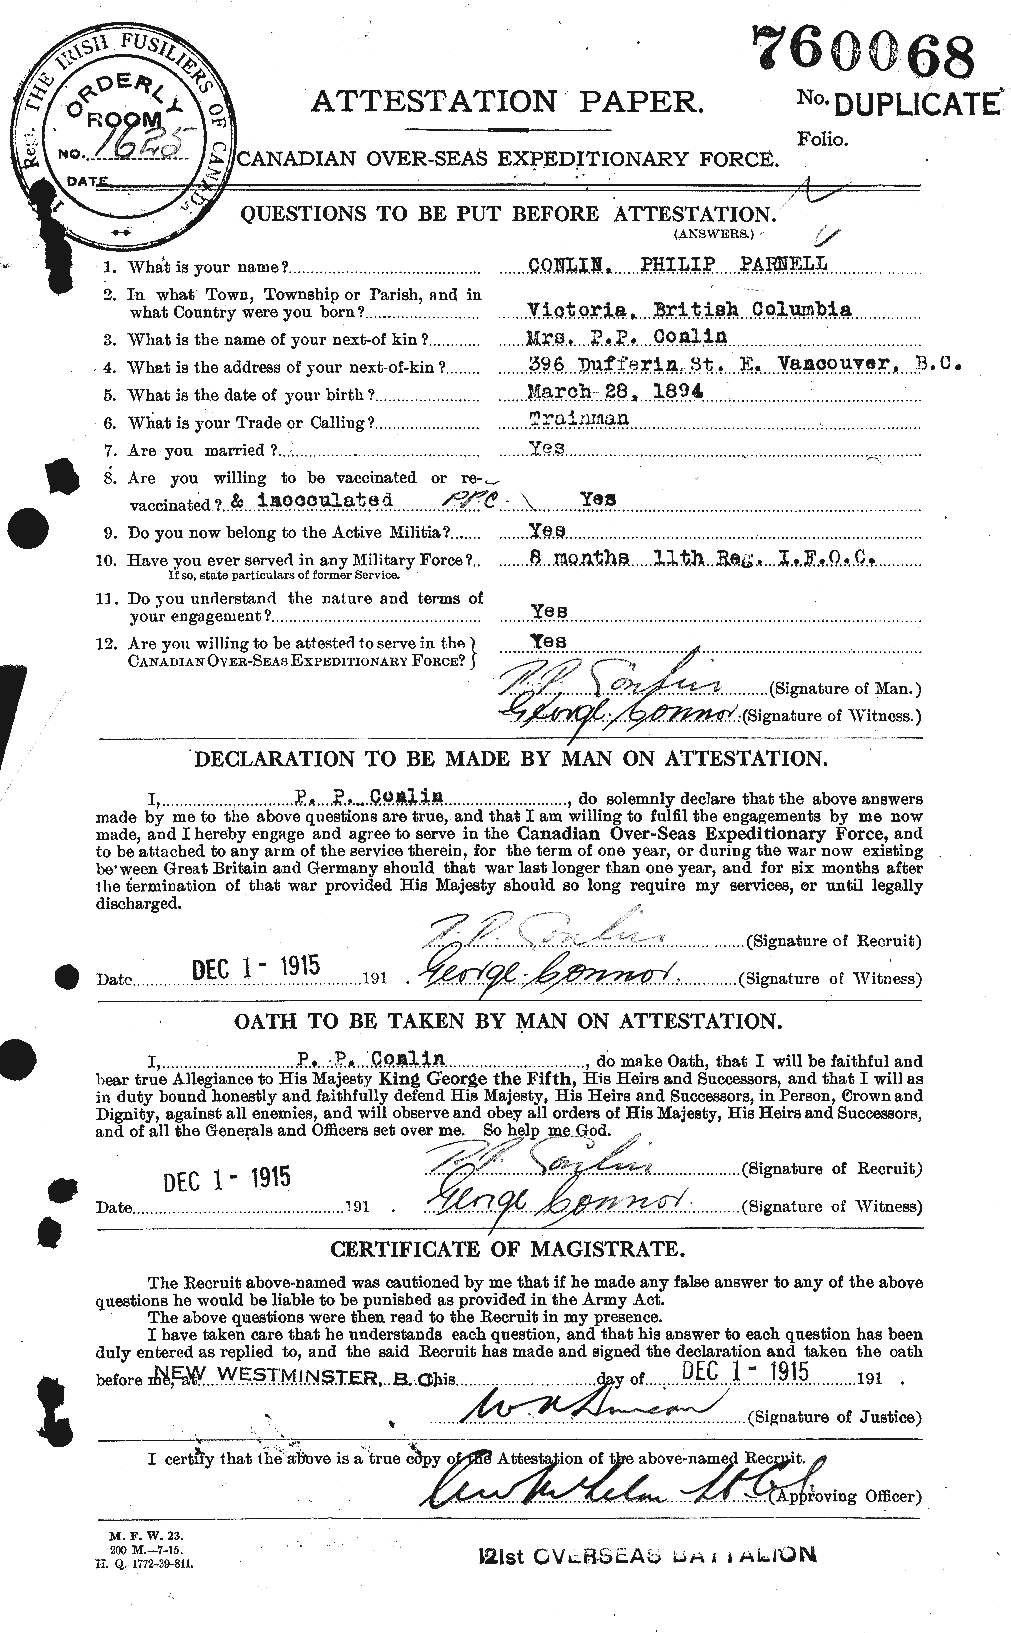 Dossiers du Personnel de la Première Guerre mondiale - CEC 067756a